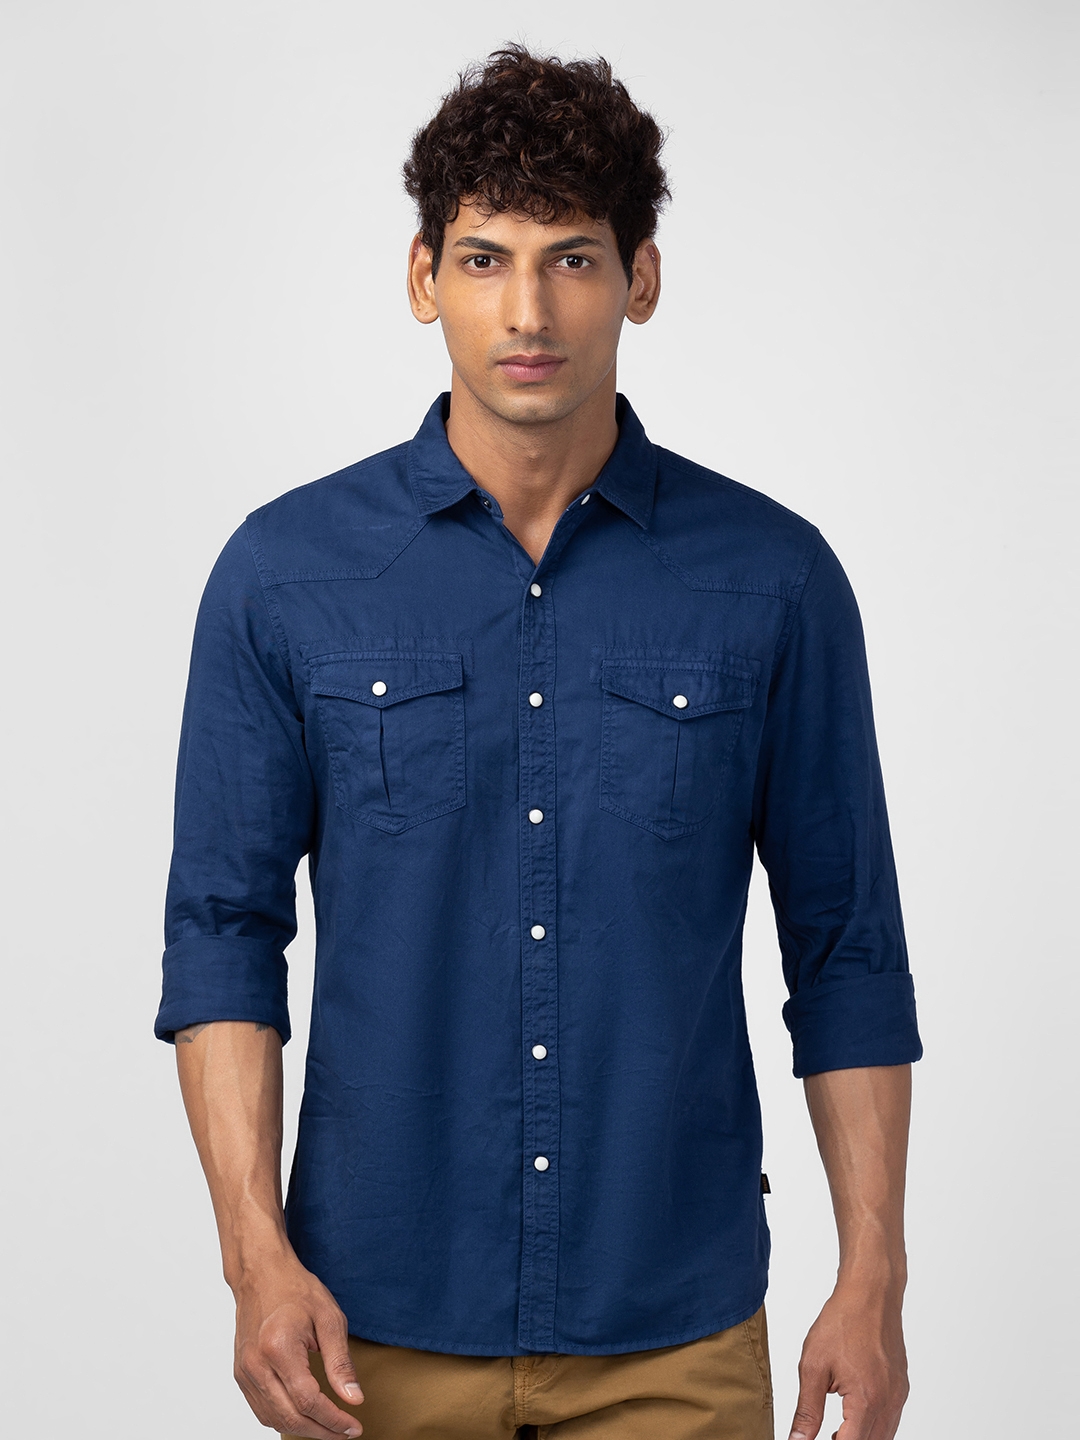 Spykar Men Indigo Blue Cotton Slim Fit Half Sleeve Denim Shirt : Amazon.in:  Clothing & Accessories